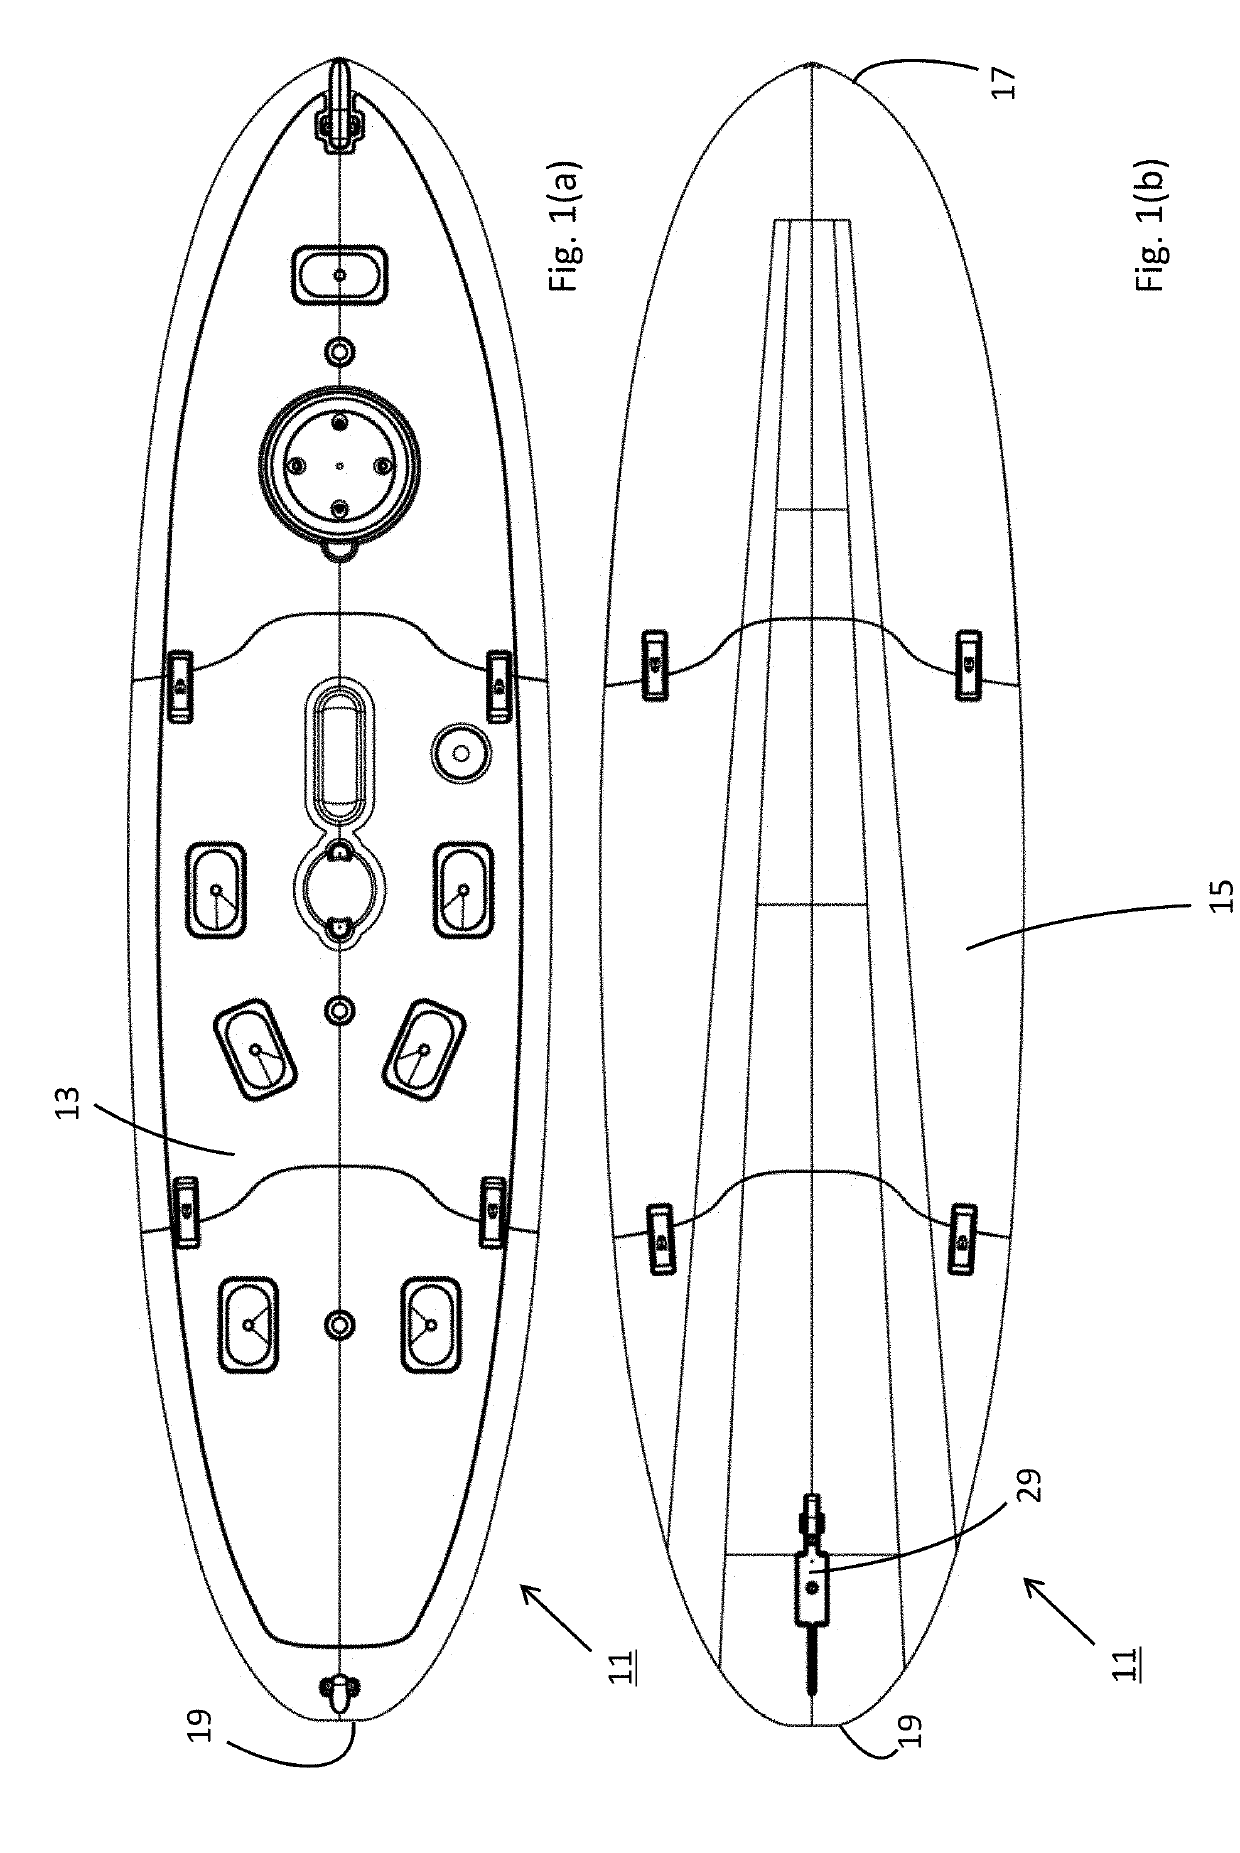 Board-type watercraft